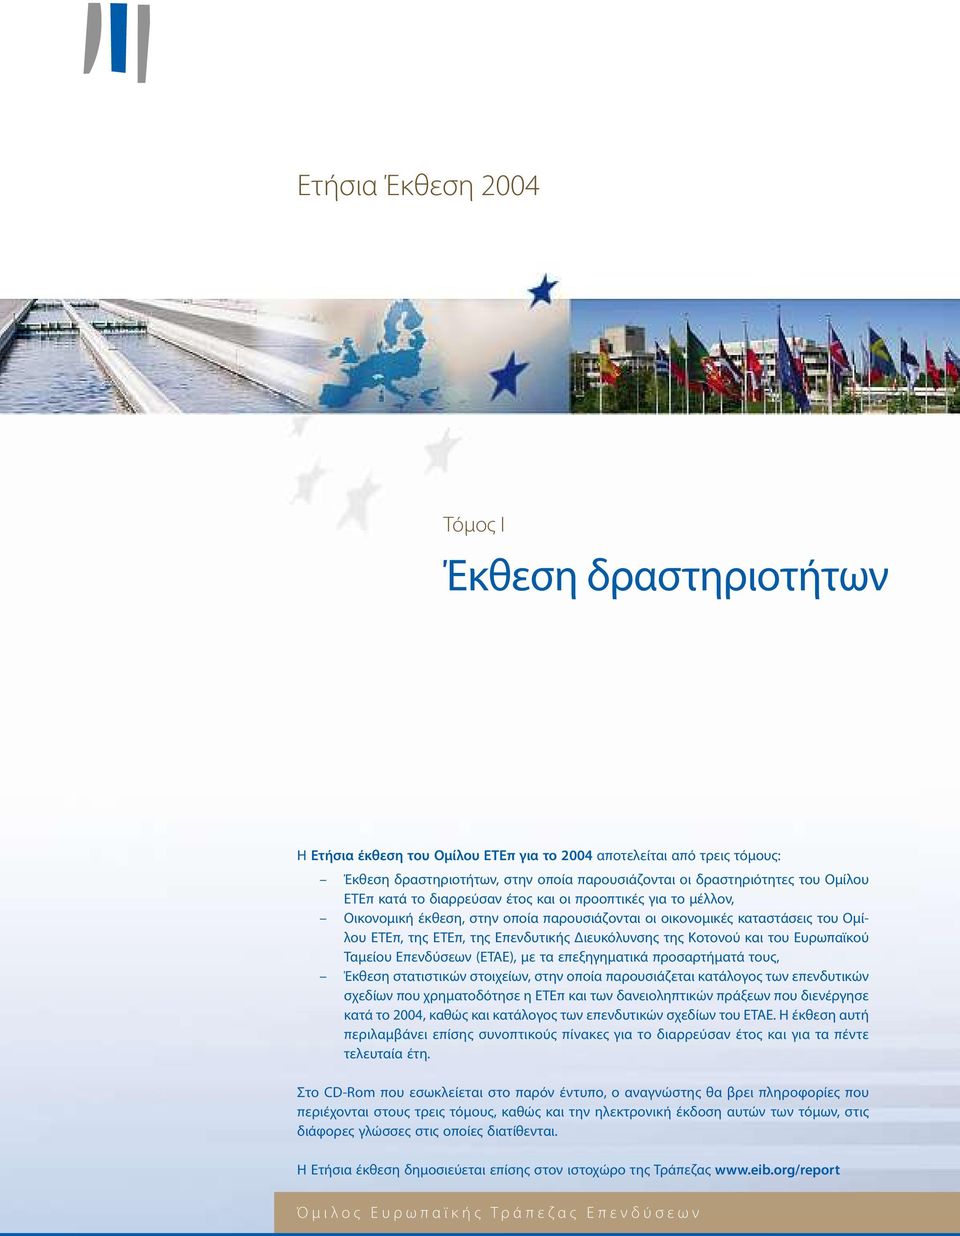 Κοτονού και του Ευρωπαϊκού Ταμείου Επενδύσεων (ΕΤΑΕ), με ταεπεξηγηματικά προσαρτήματά τους, Έκθεση στατιστικών στοιχείων, στην οποία παρουσιάζεταικατάλογος των επενδυτικών σχεδίων